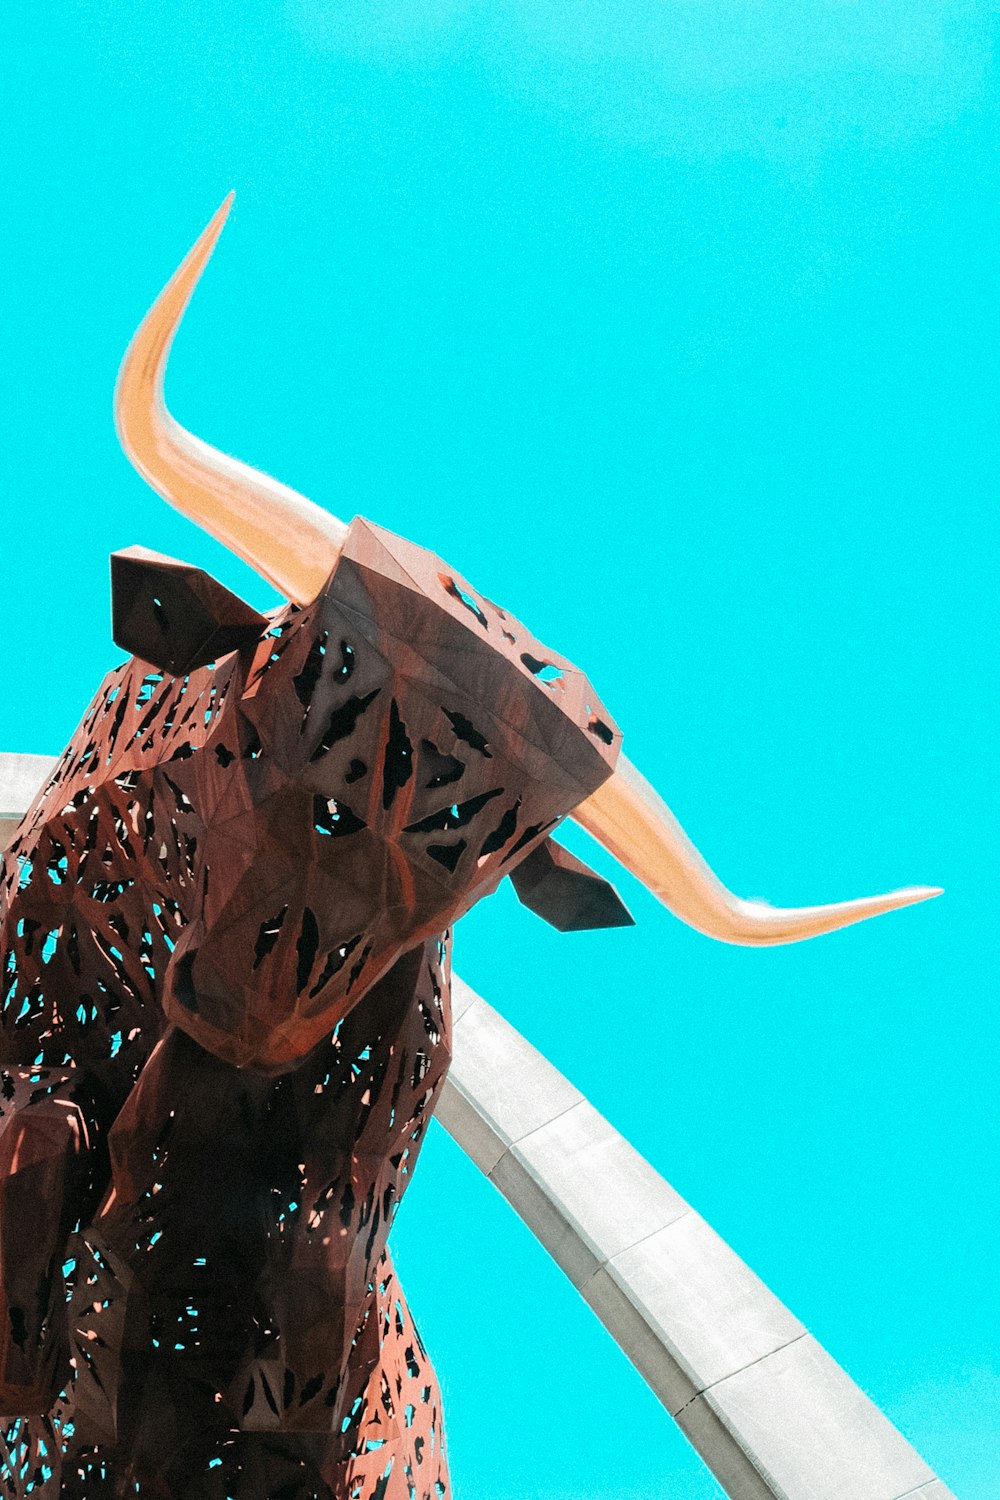 brown metal bull statue